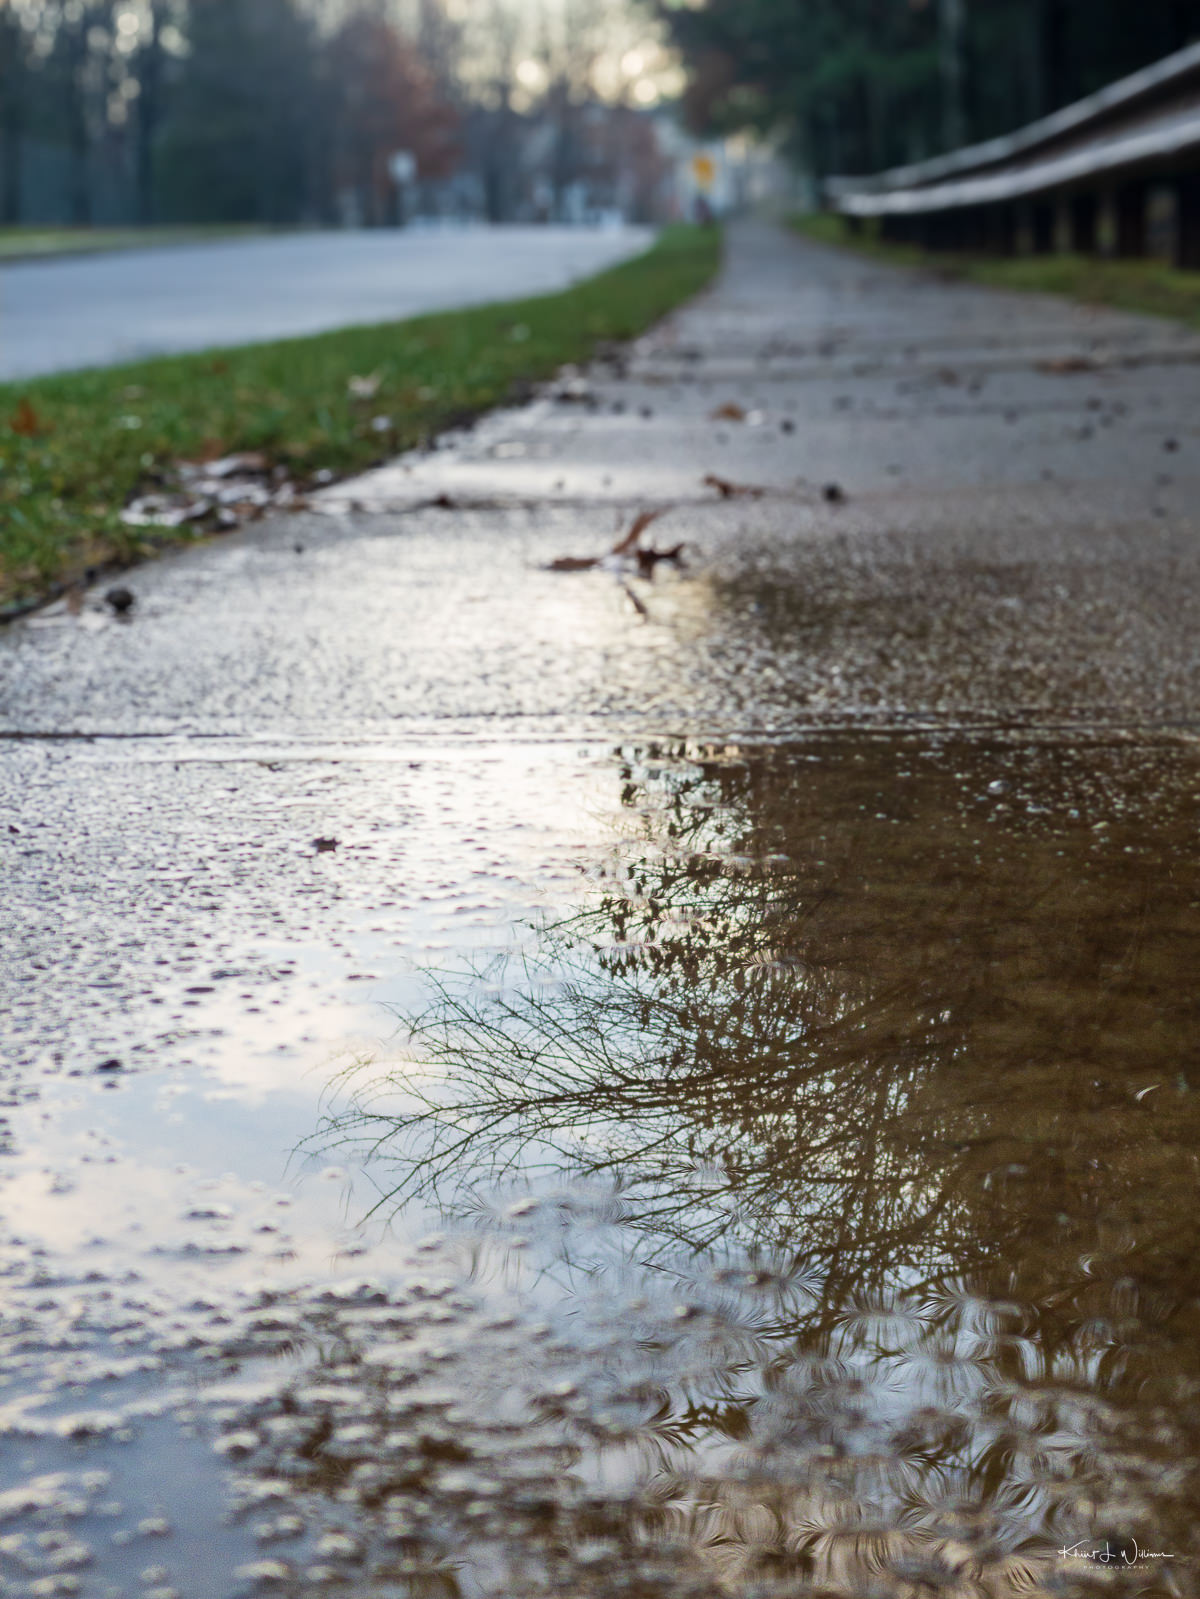 Sidewalk after a rain